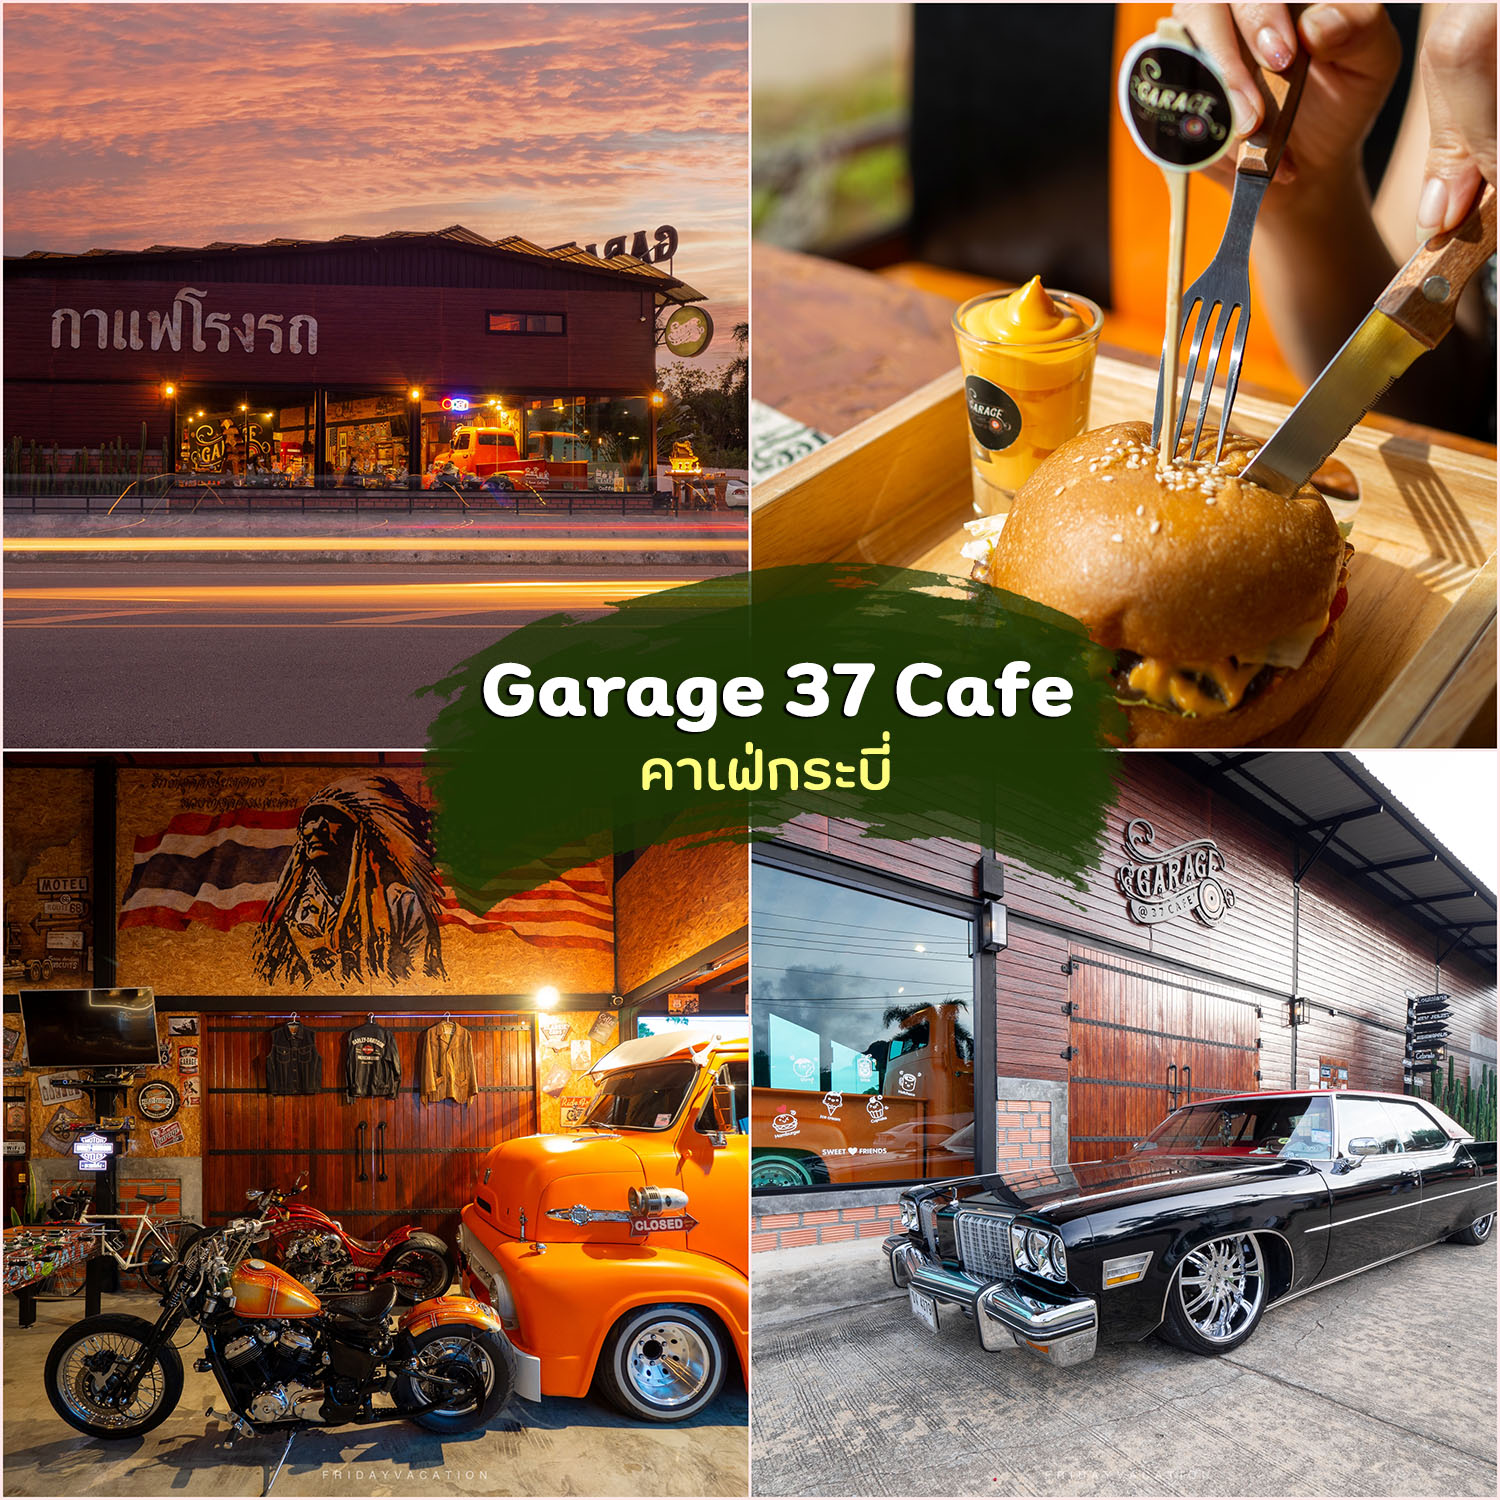 Garage 37 Cafe ร้านกาแฟโรงรถ คาเฟ่กระบี่ แนวโรงจอดรถสไตล์อเมริกัน อาหารเครื่องดื่มเด็ด ร้านวินเทจมาก บอกเลย 10/10